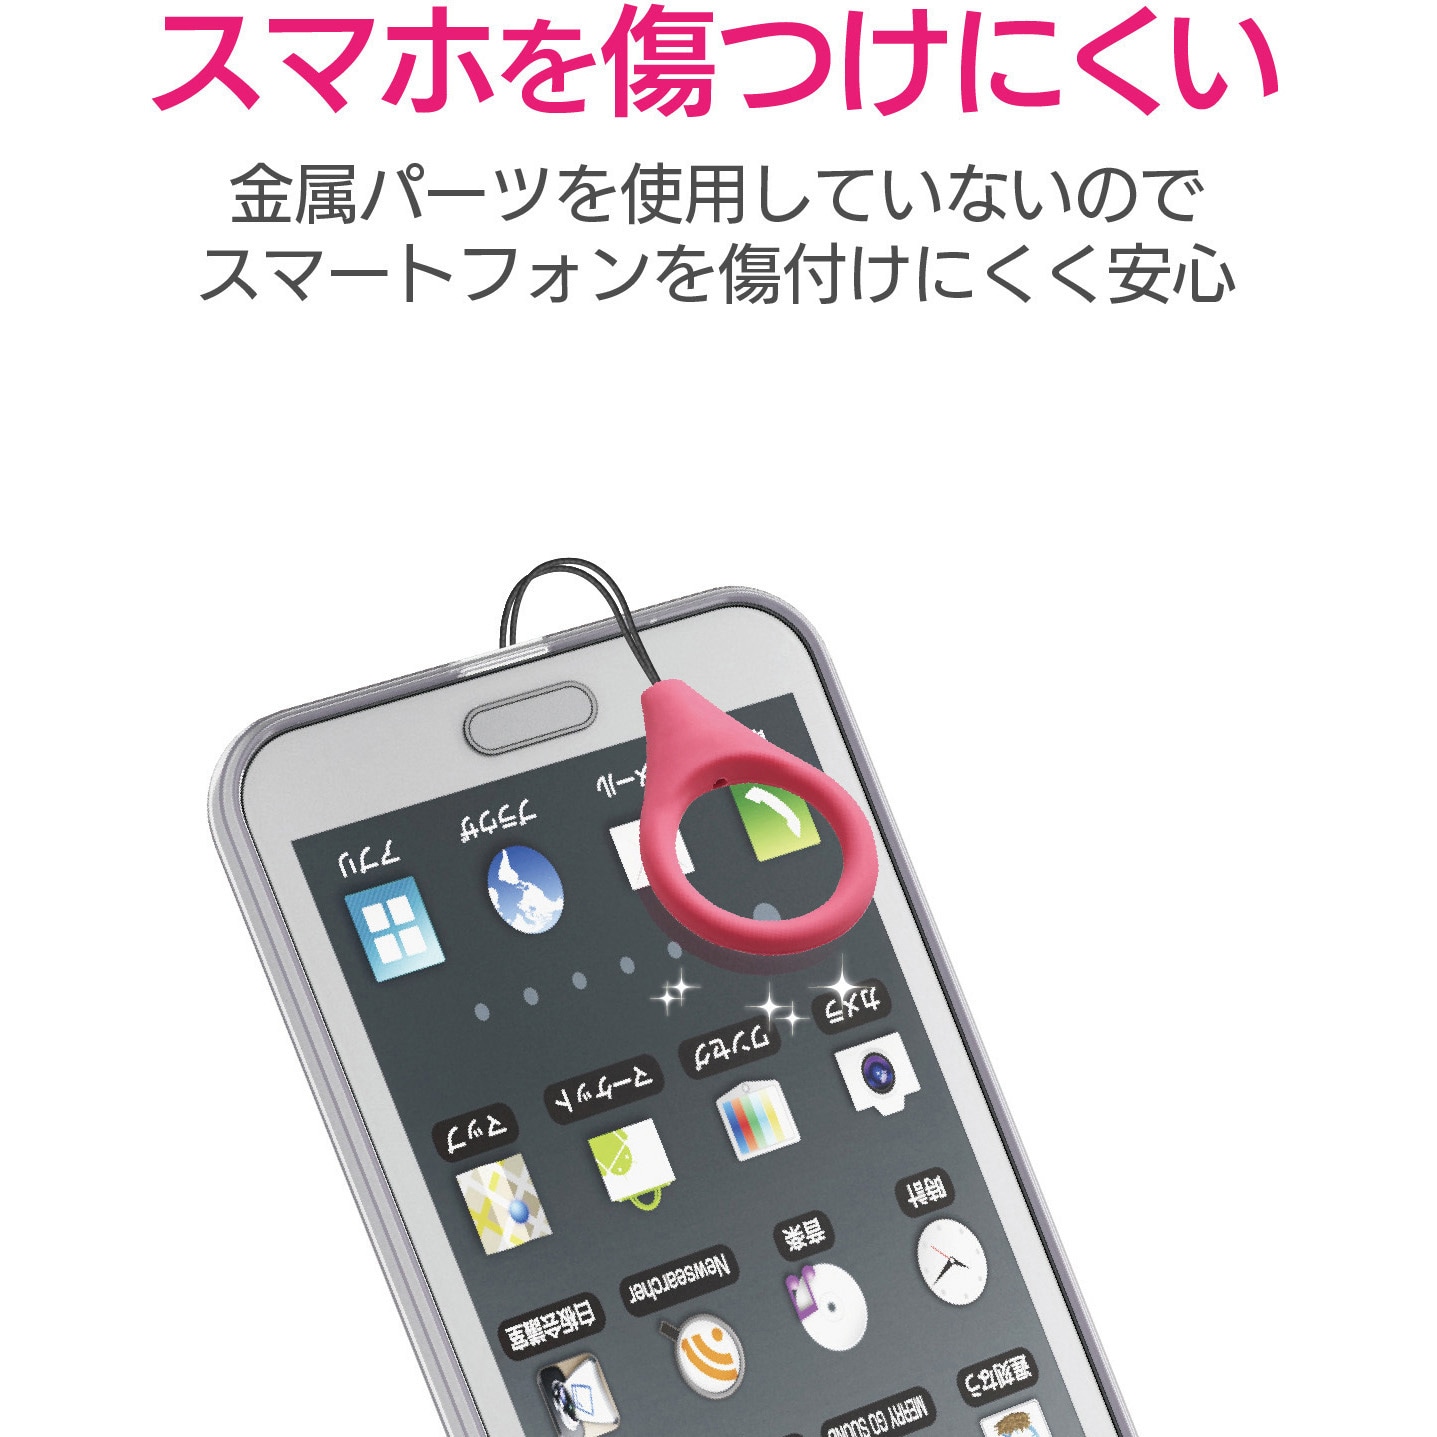 P Stf01spnd スマートフォン用ストラップ リングストラップ シリコン 1個 エレコム 通販サイトmonotaro